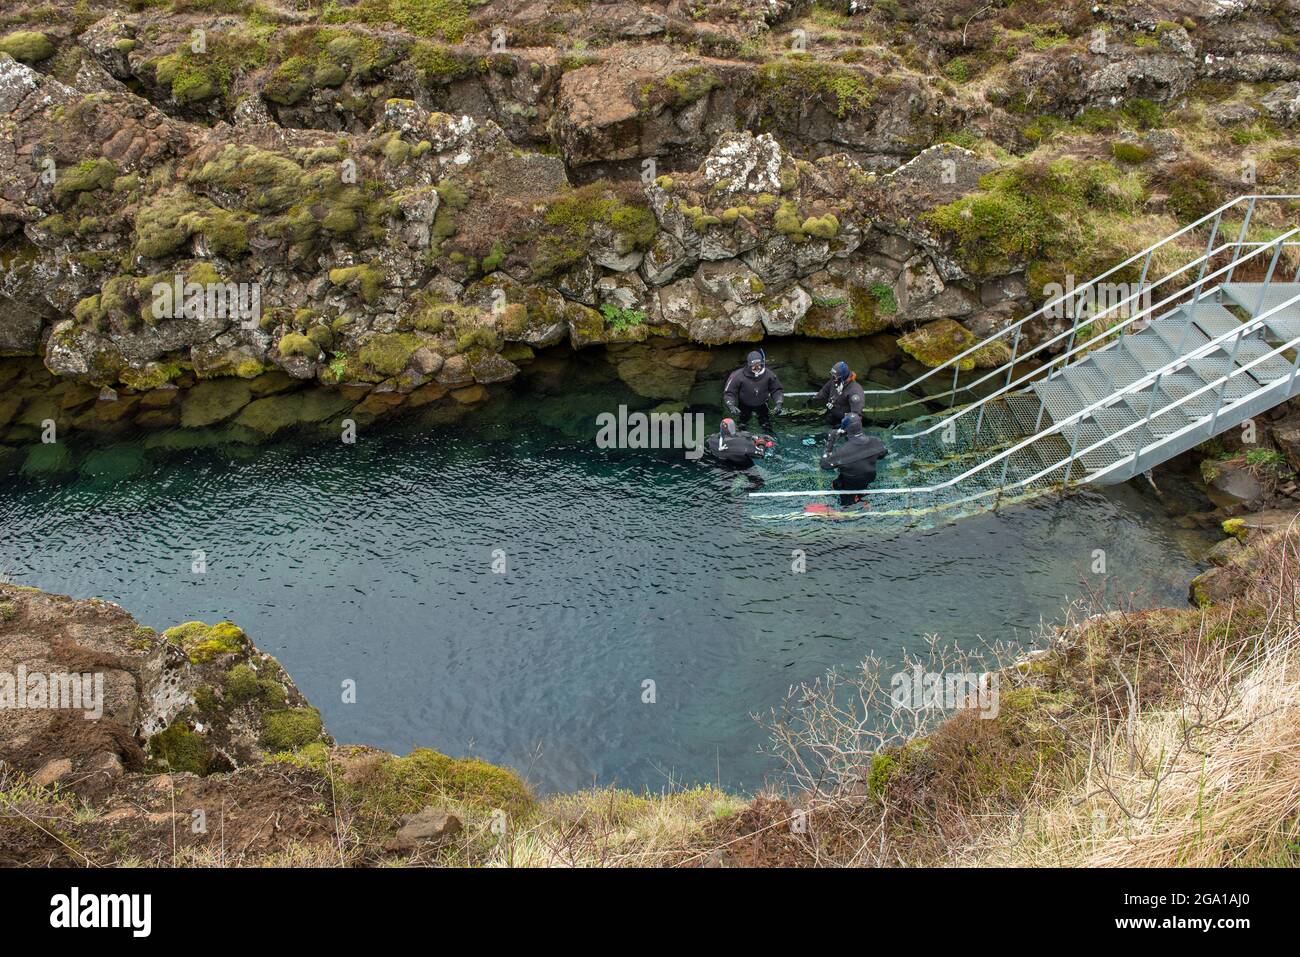 L'Islande, SILFRA S.P.A. - 20 MAI 2019 : les plongeurs de la préparation d'entrer dans l'eau au rift Silfra S.p.a., l'endroit où l'américain et eurasien Banque D'Images